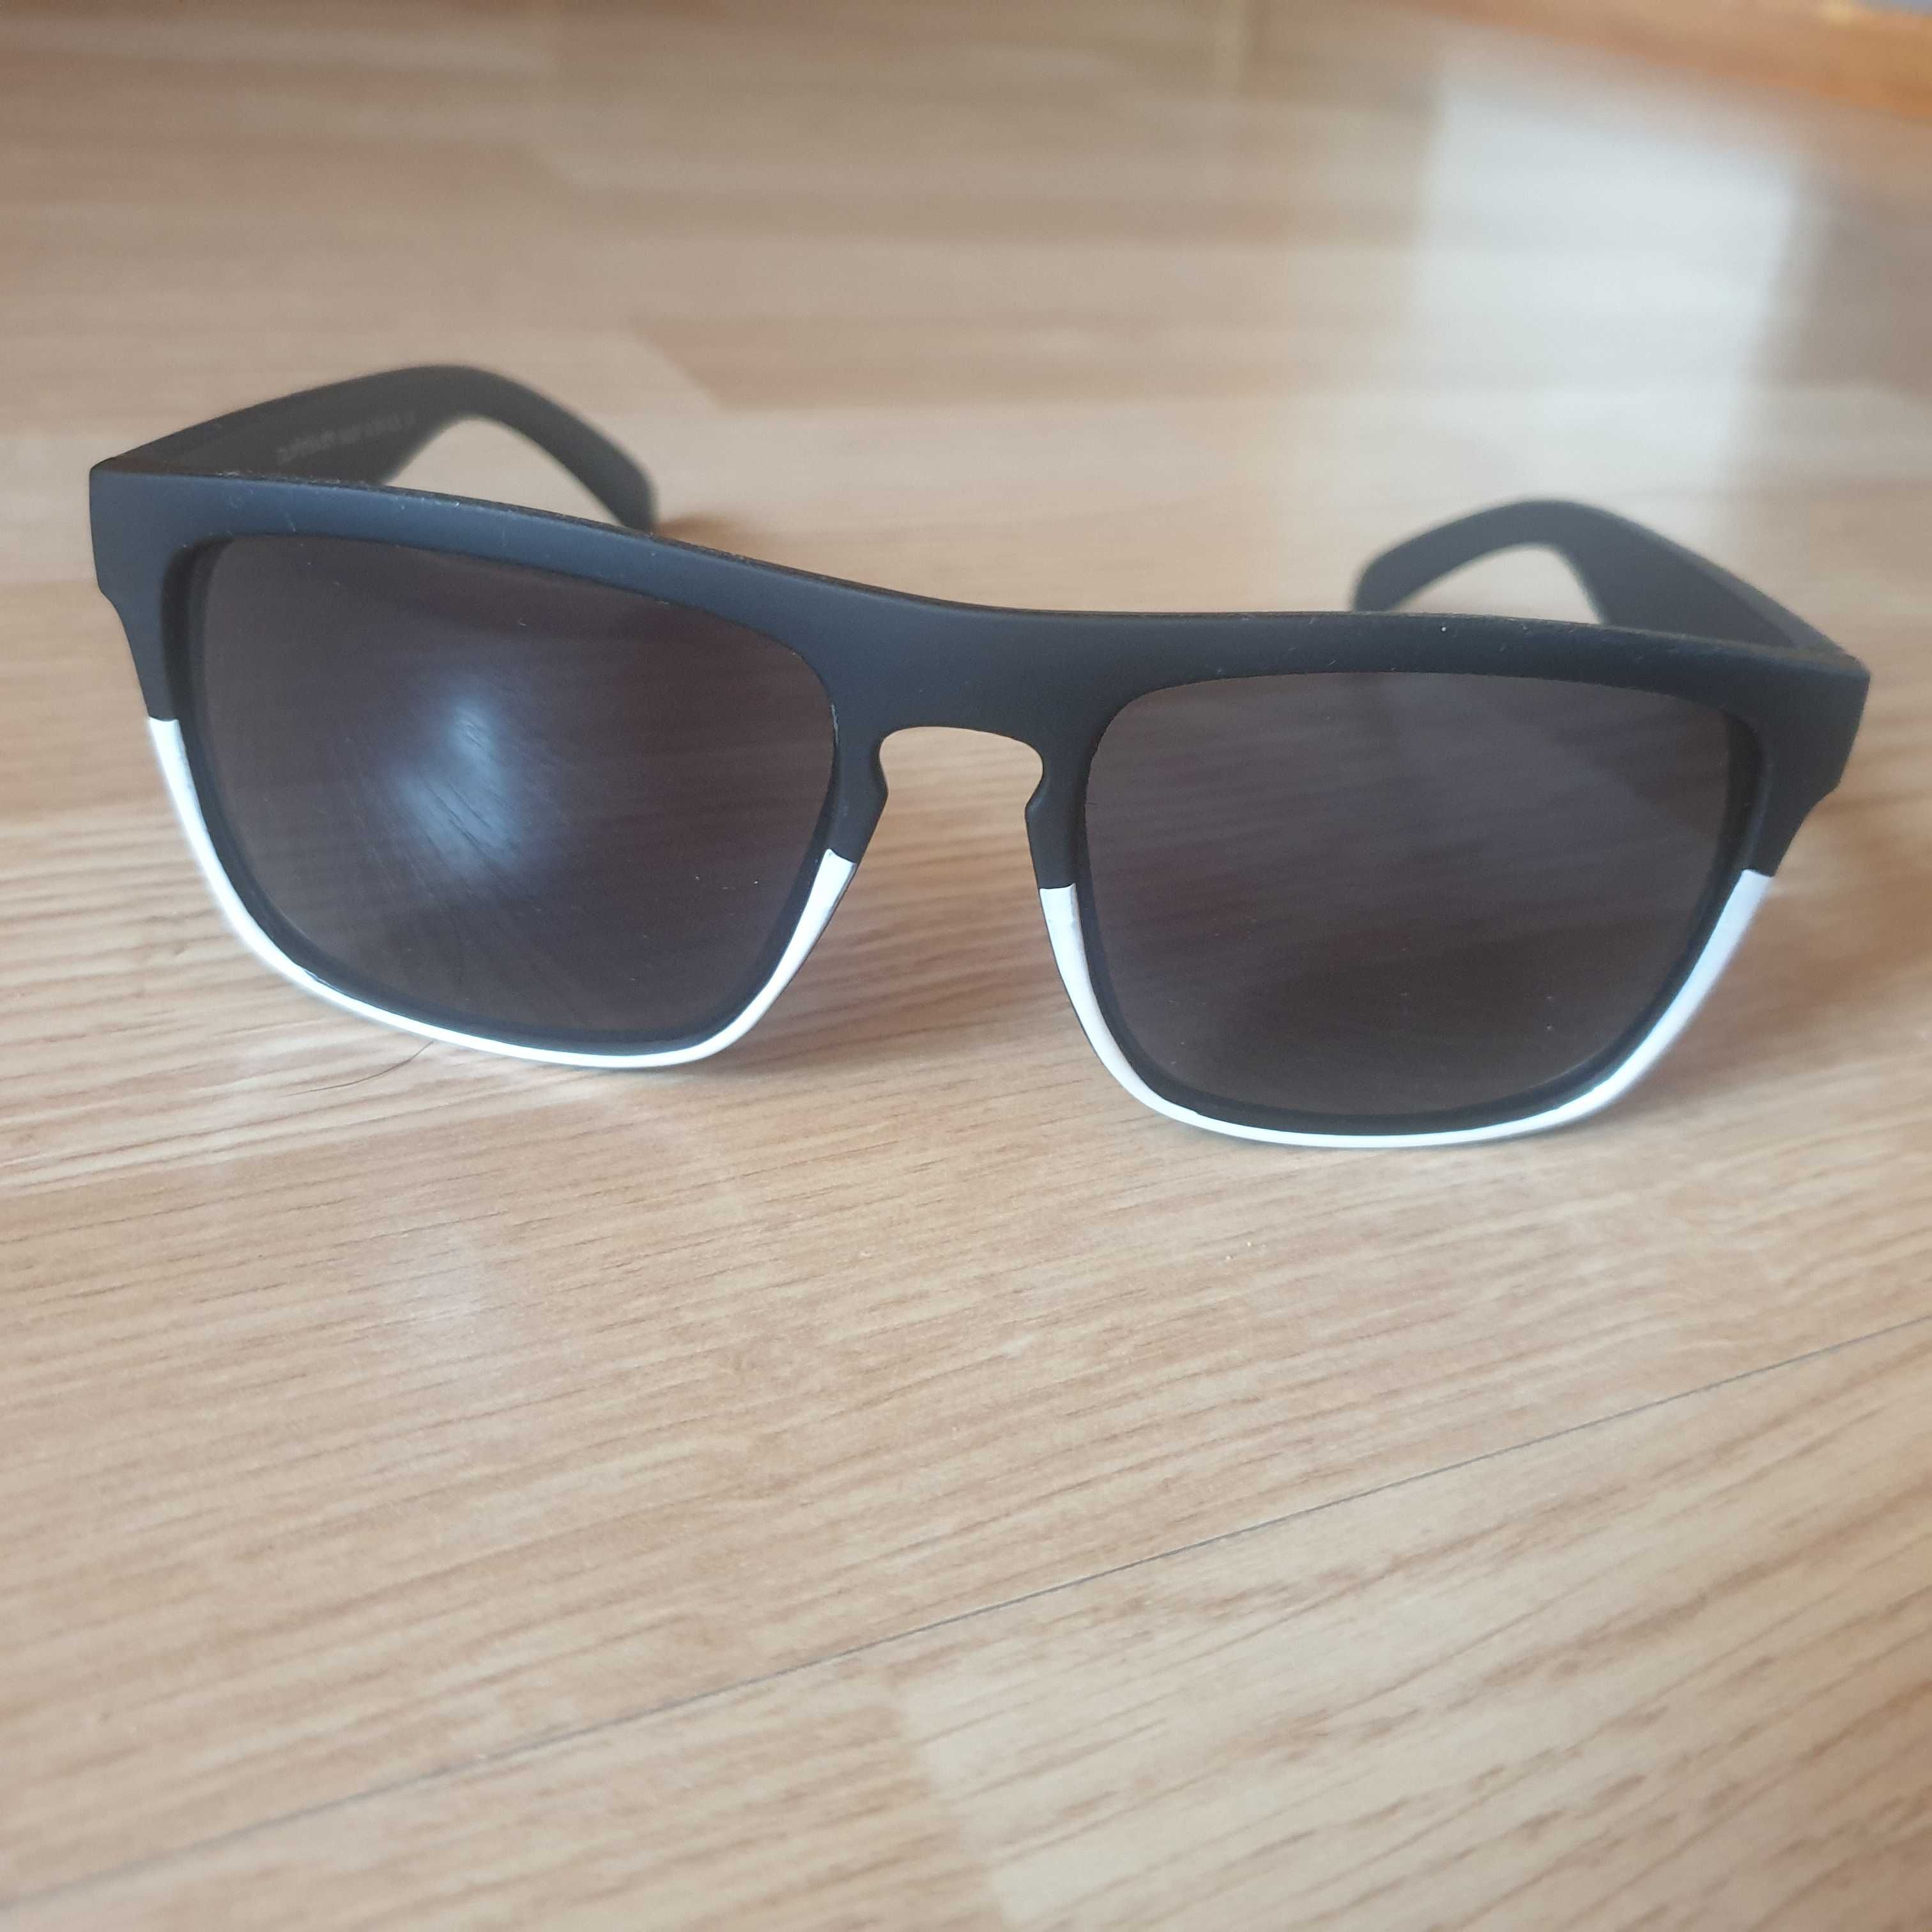 Quiksilver okulary przeciwsłoneczne damskie czarno-biała oprawka